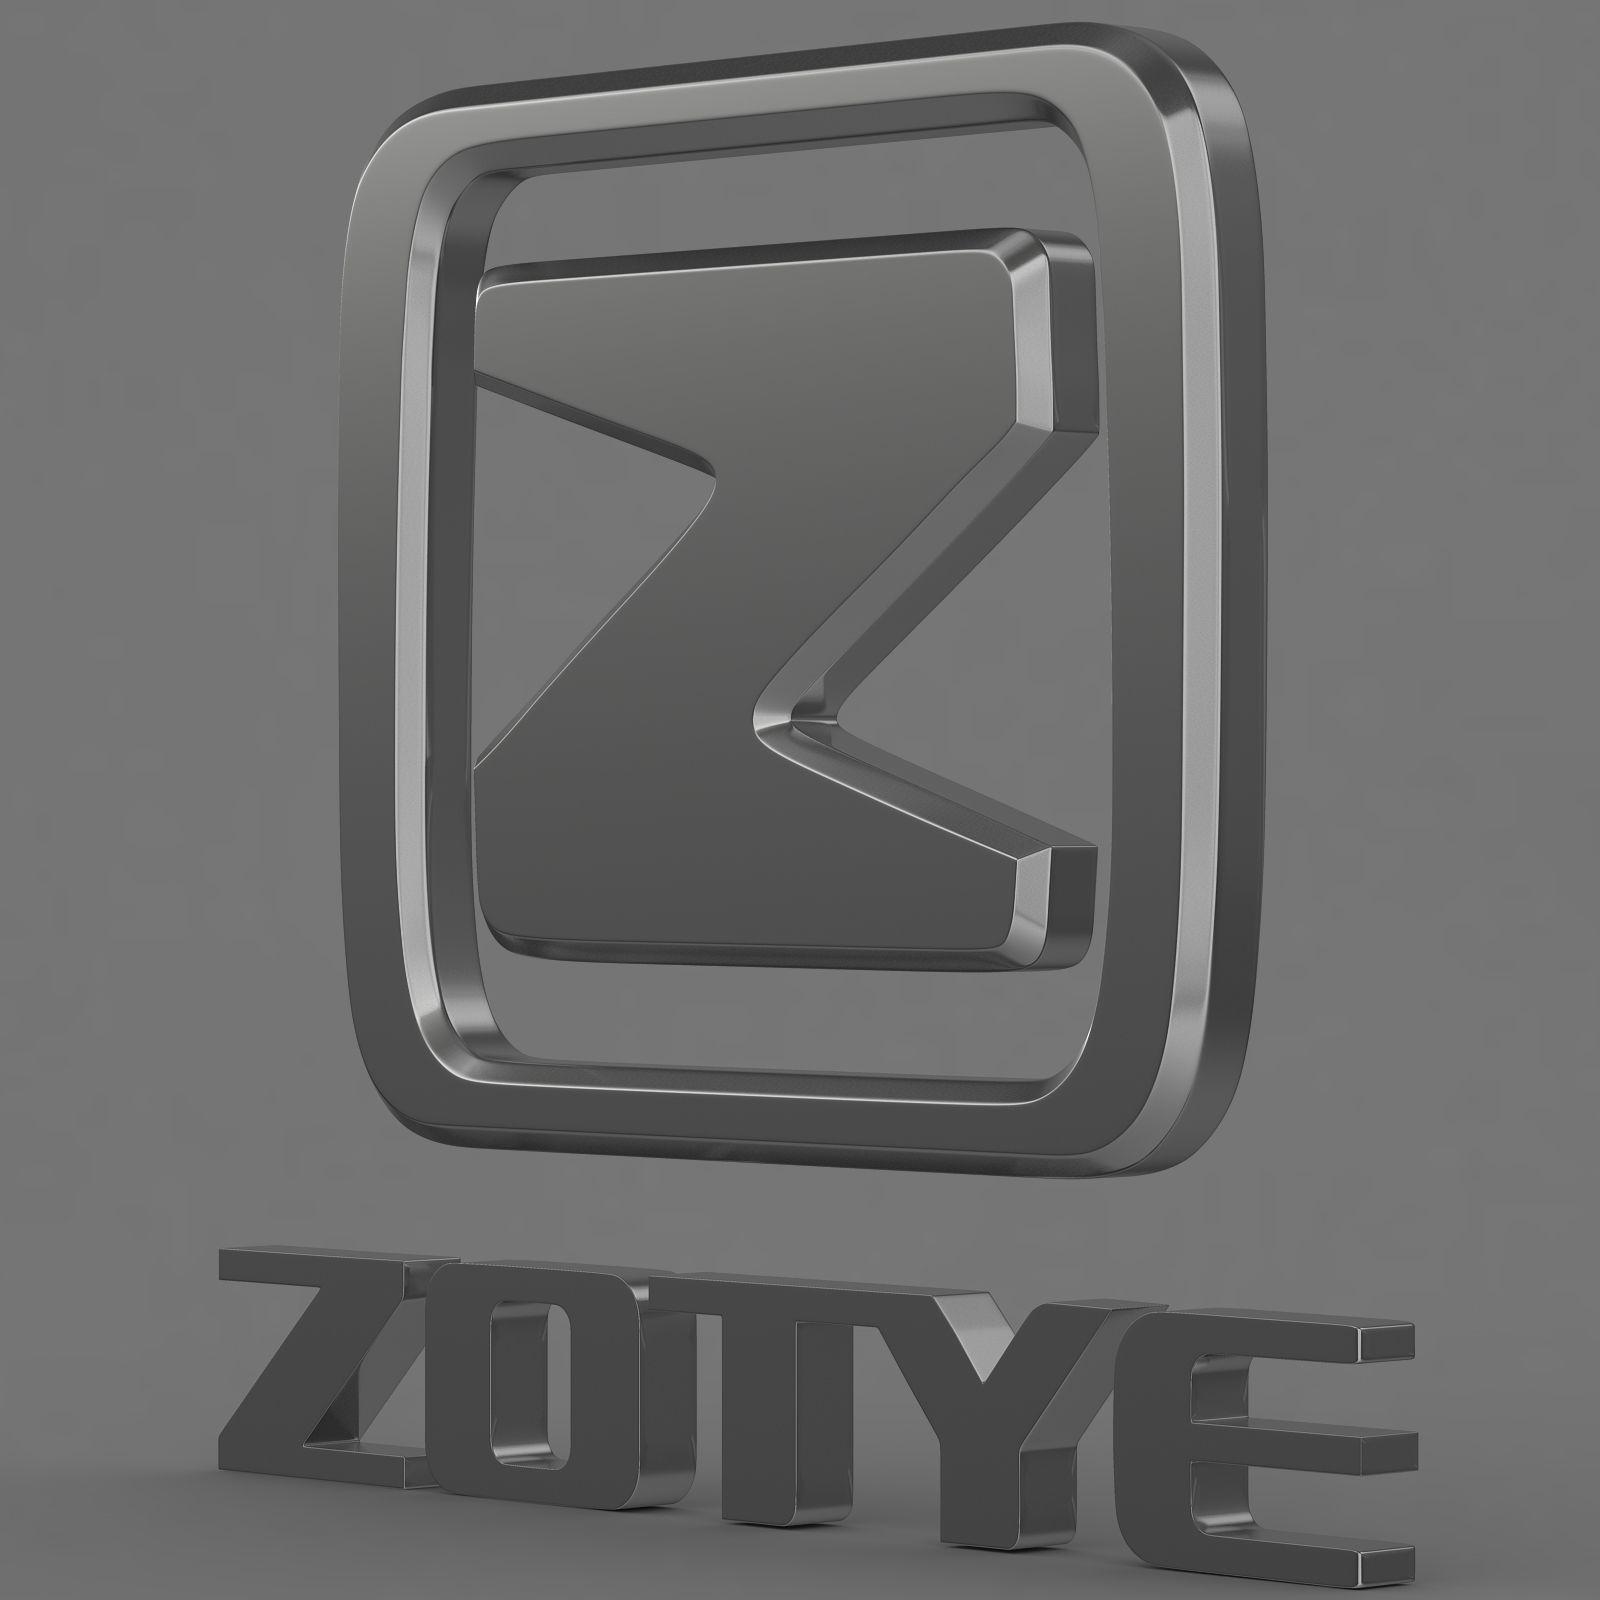 Zotye Logo - Zotye logo | 3D model